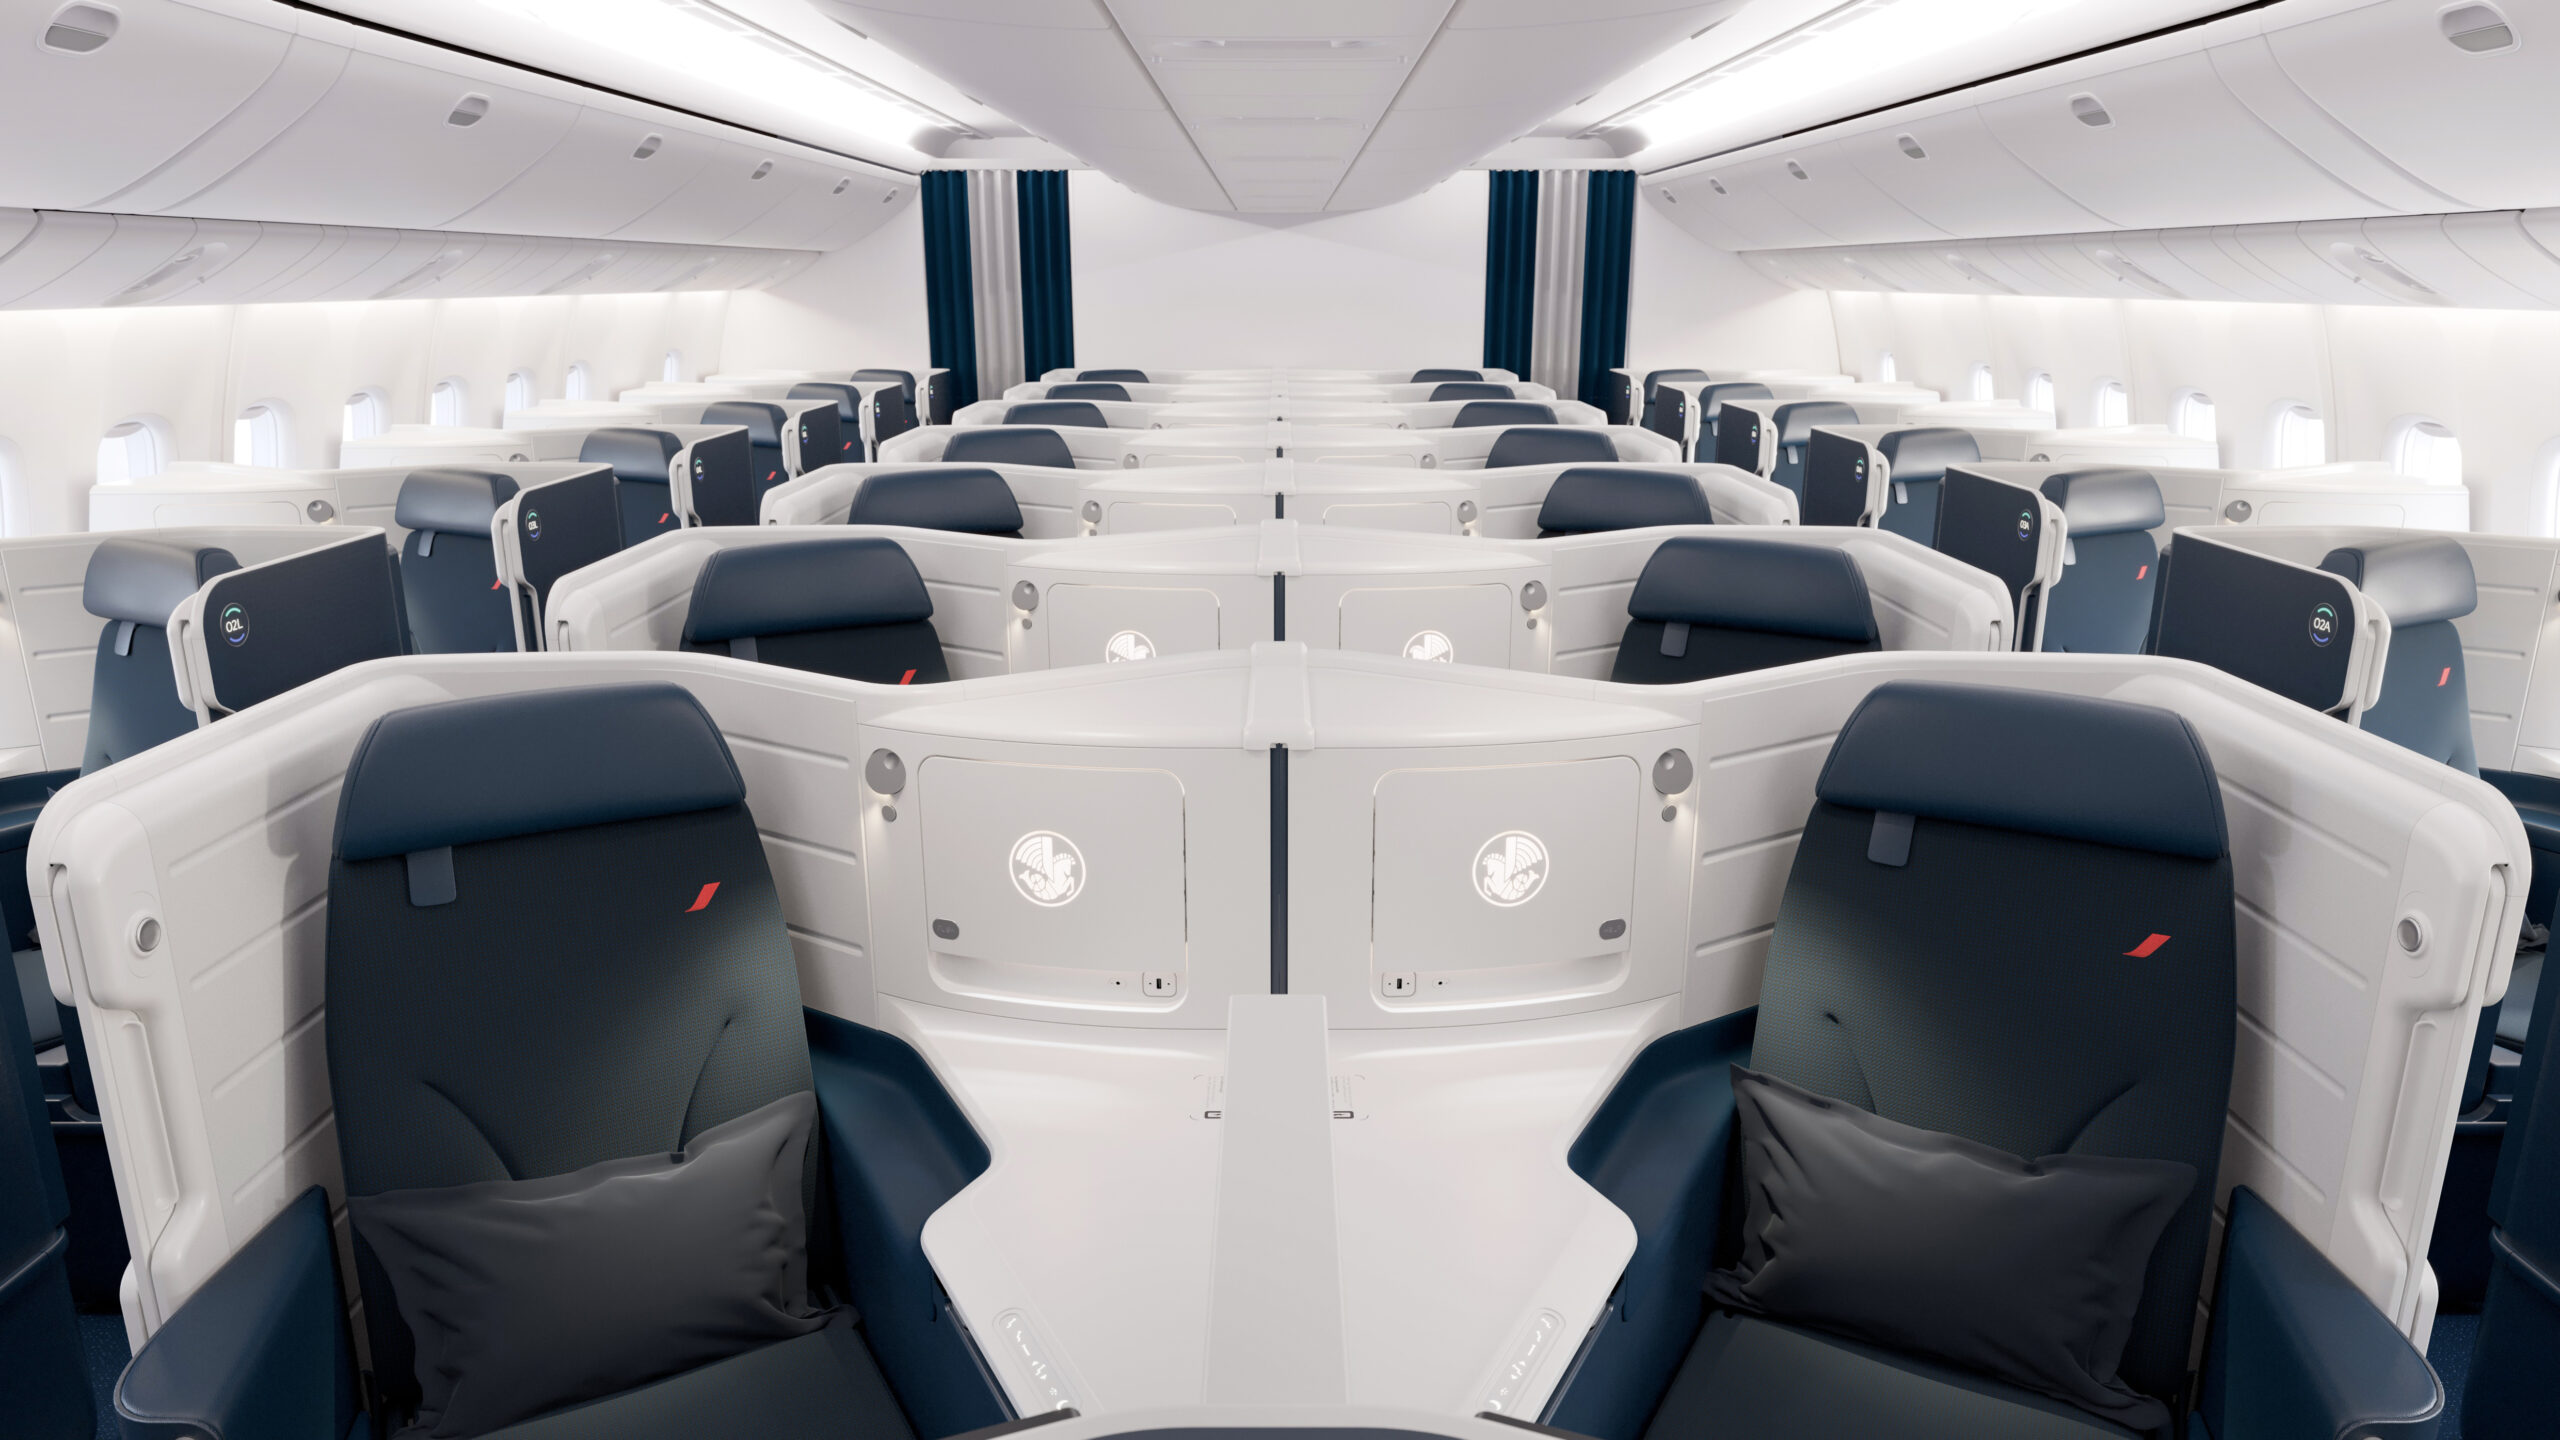 Fauteuils en cuir et laine de la cabine blanche et noire de la Business Class d'un avion Air France